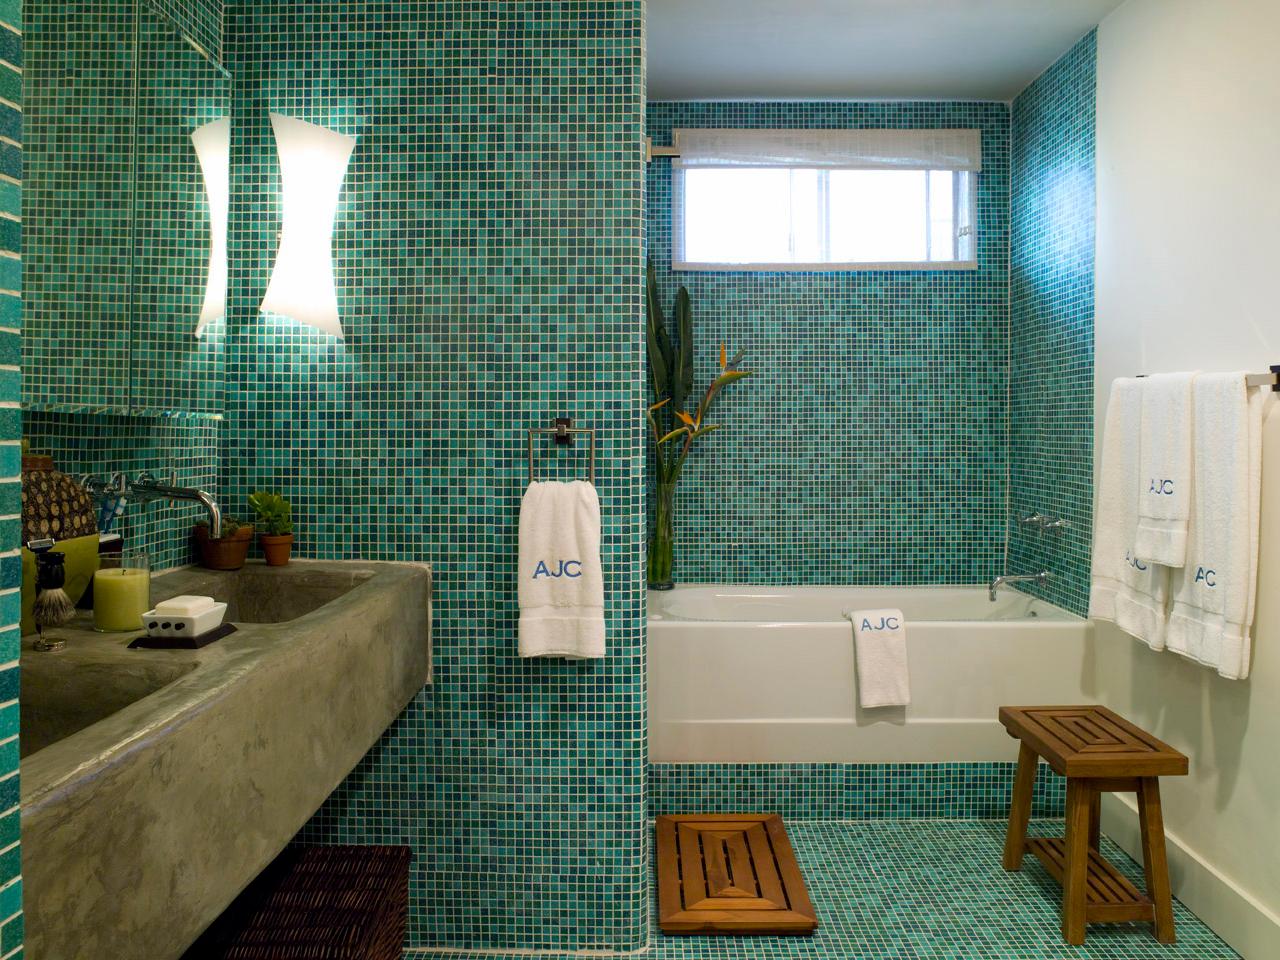 Waterproofing A Bathroom, Waterproofing Bathroom Floor Before Tiling